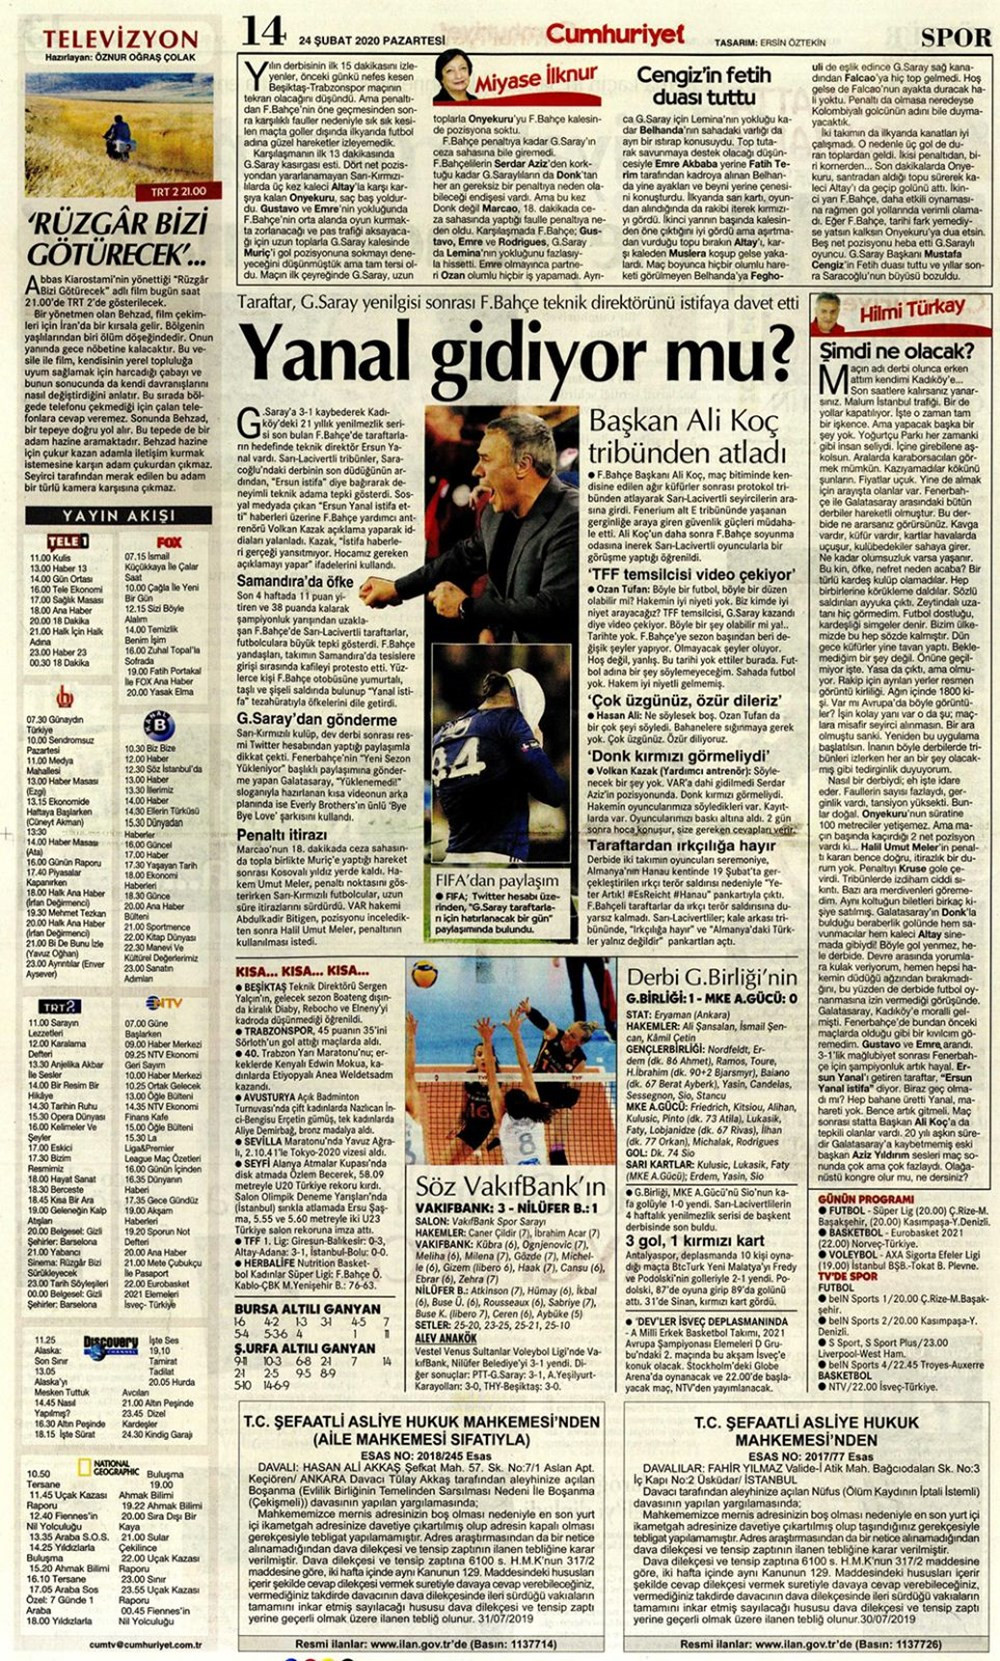 Fenerbahçe Galatasaray derbisini hangi gazete nasıl gördü? - Resim: 4